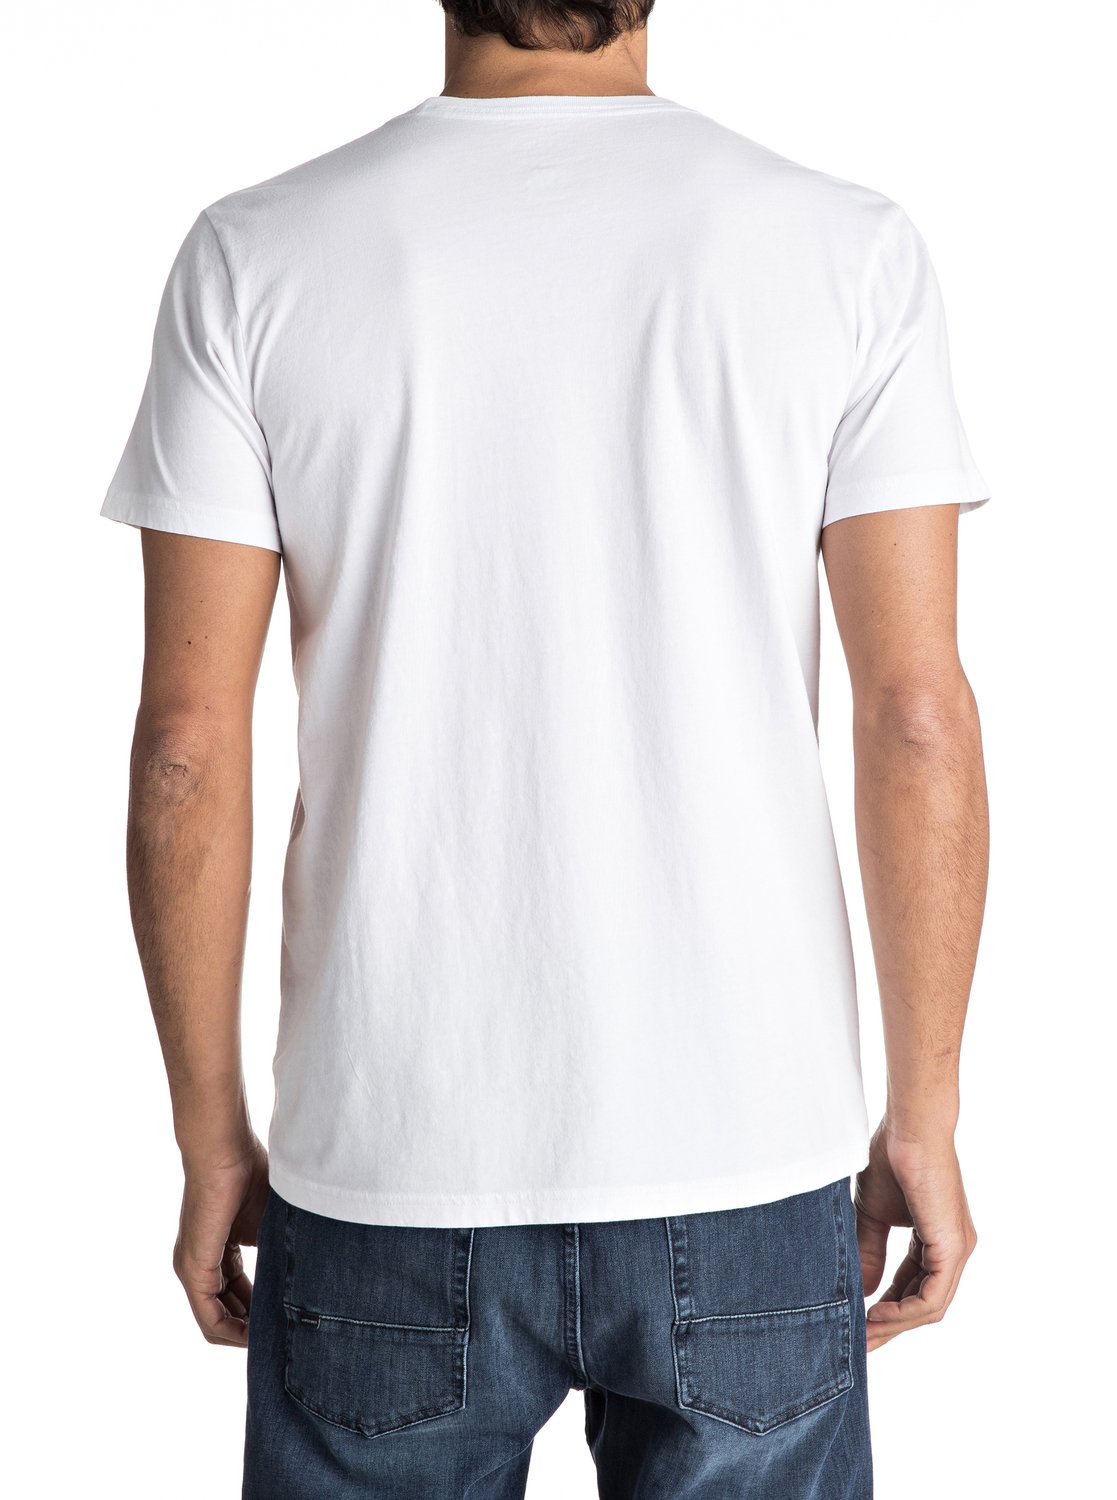 Premium Eastman Comp Soul - T-Shirt for Men 3613373009760 | Quiksilver